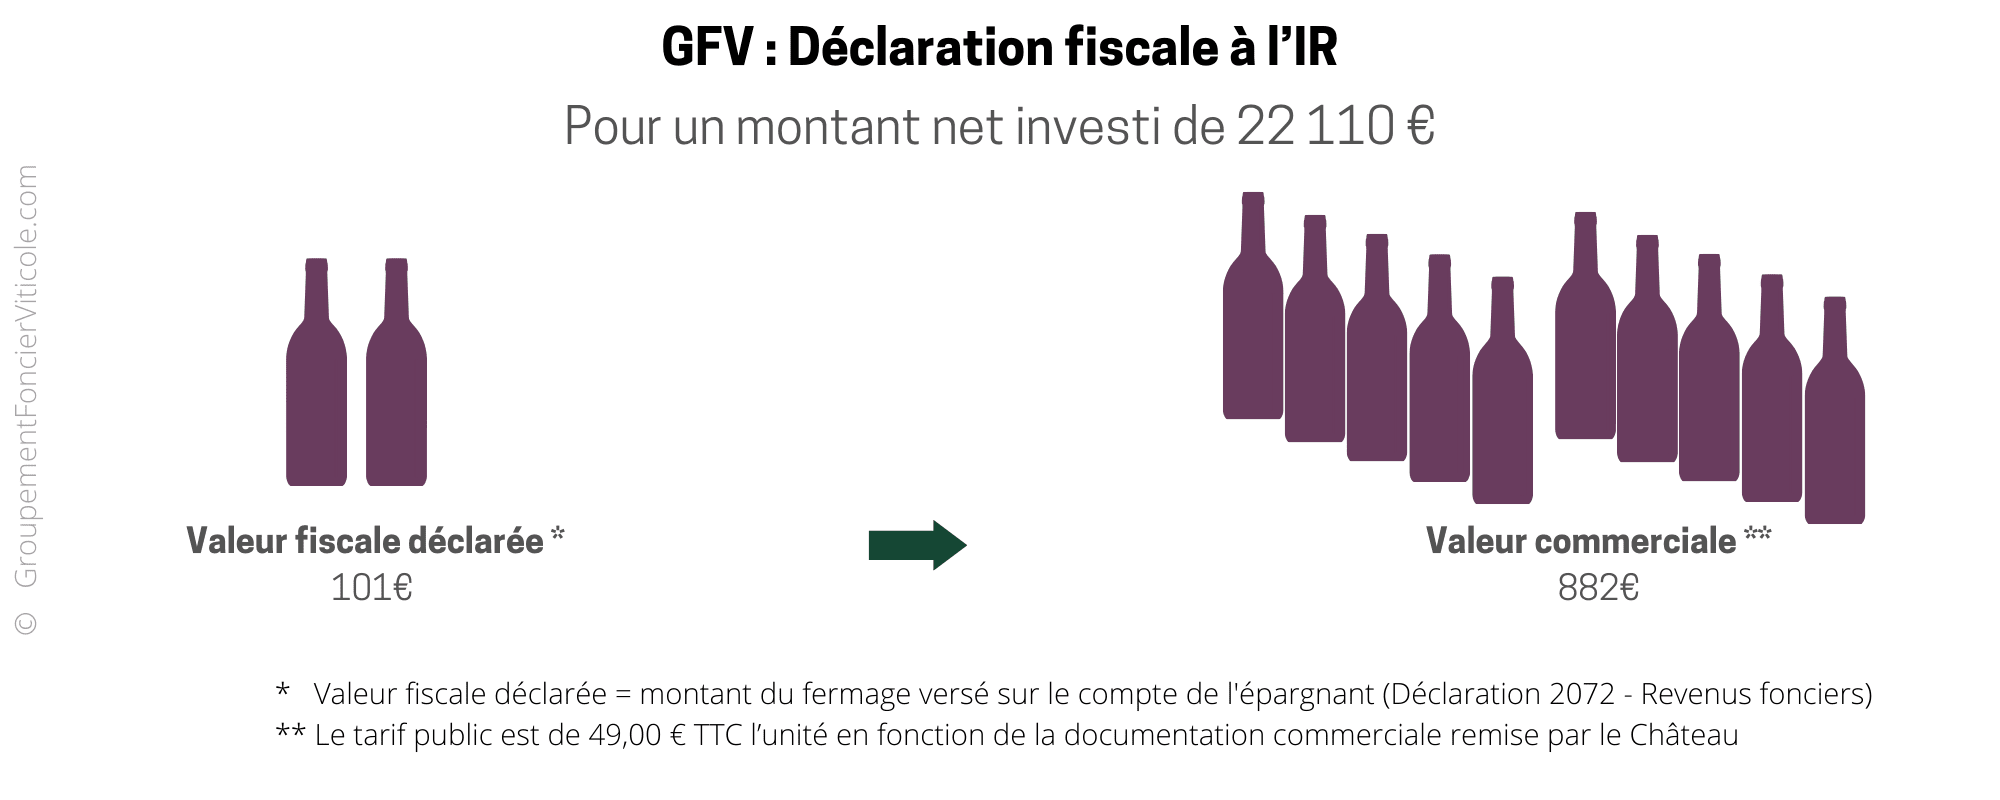 GFV Fiscalité IR avantage France Déclaration fiscale (1)